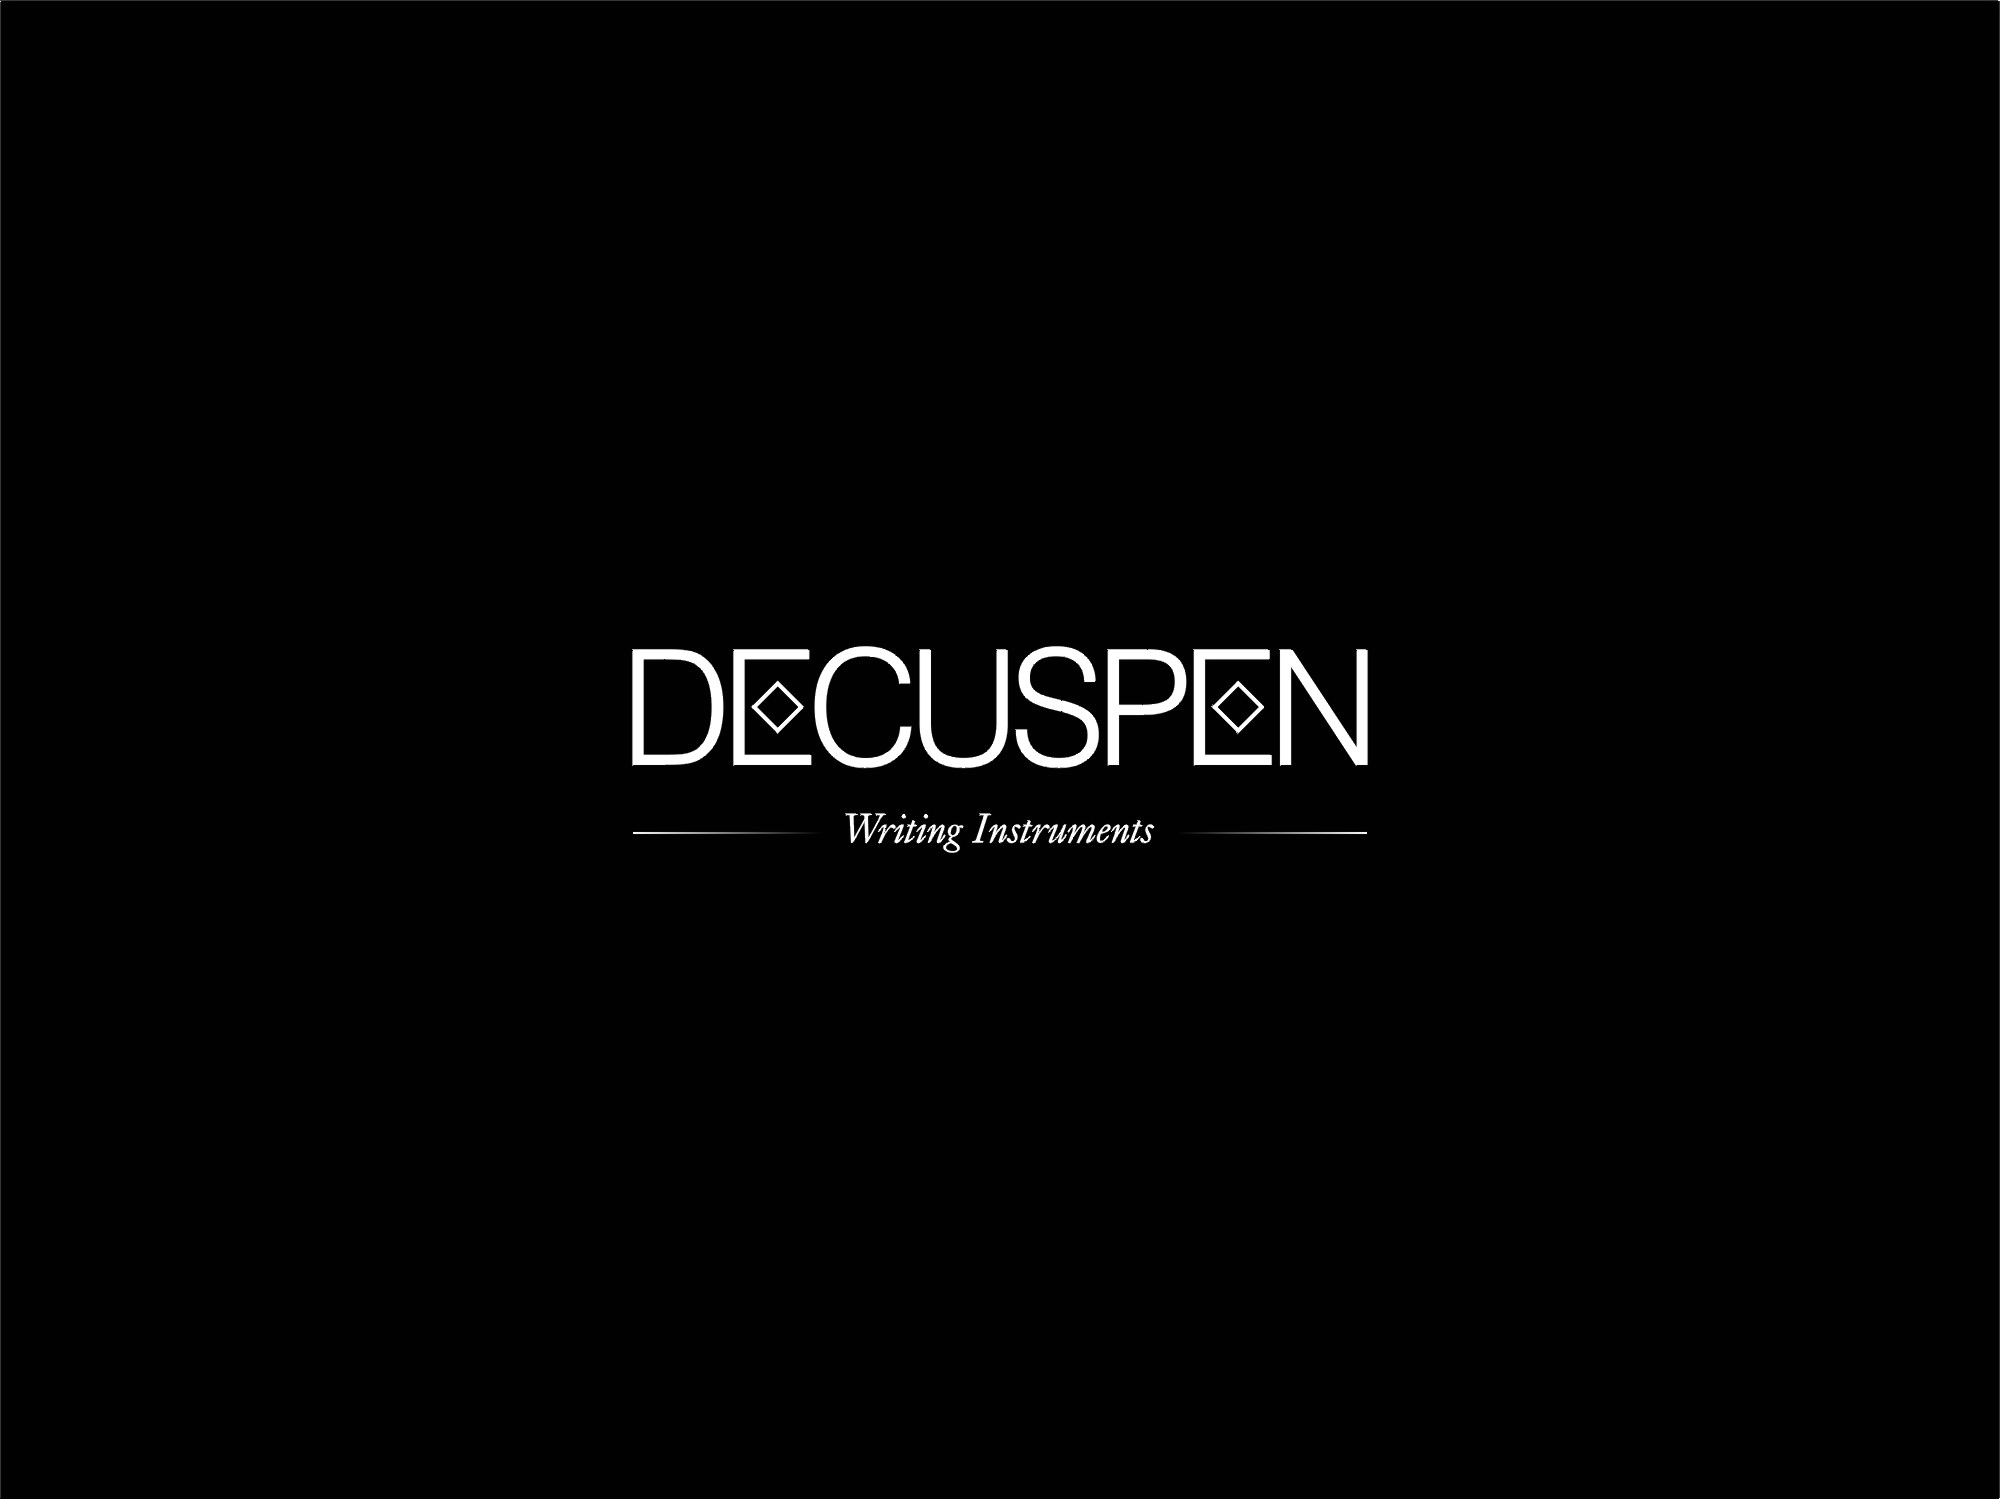 Decuspen by City Studio